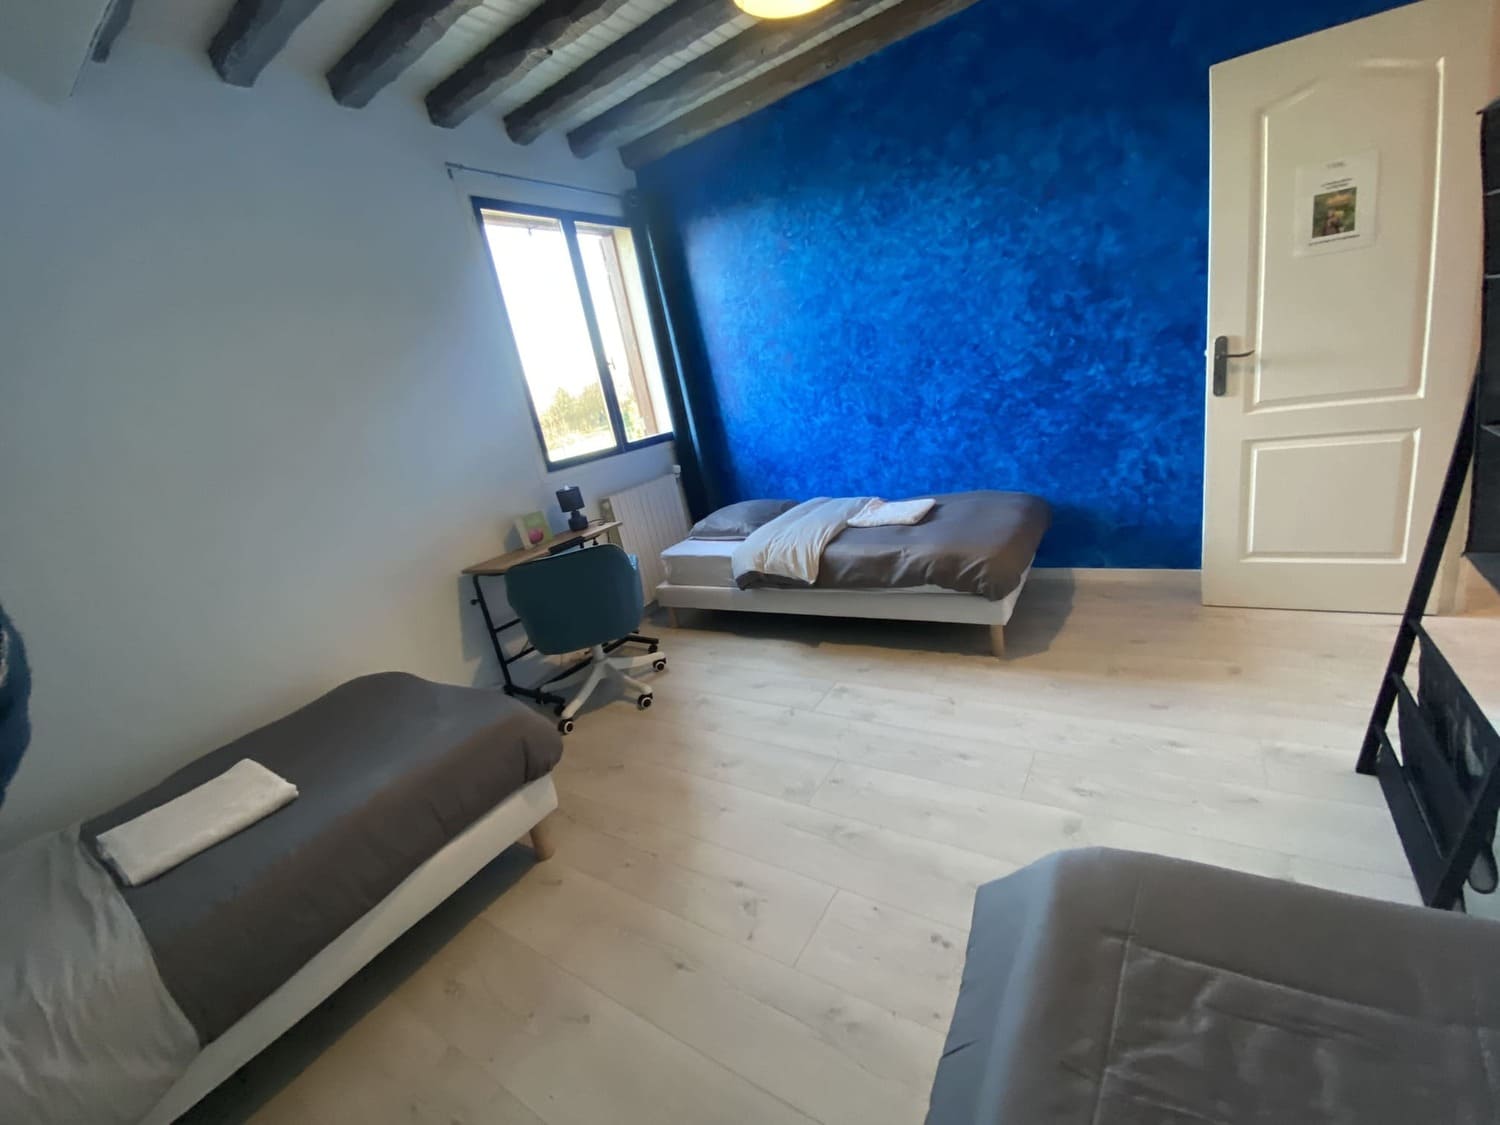 Chambres d'hôtes en Seine-et-Marne : la chambre bleue